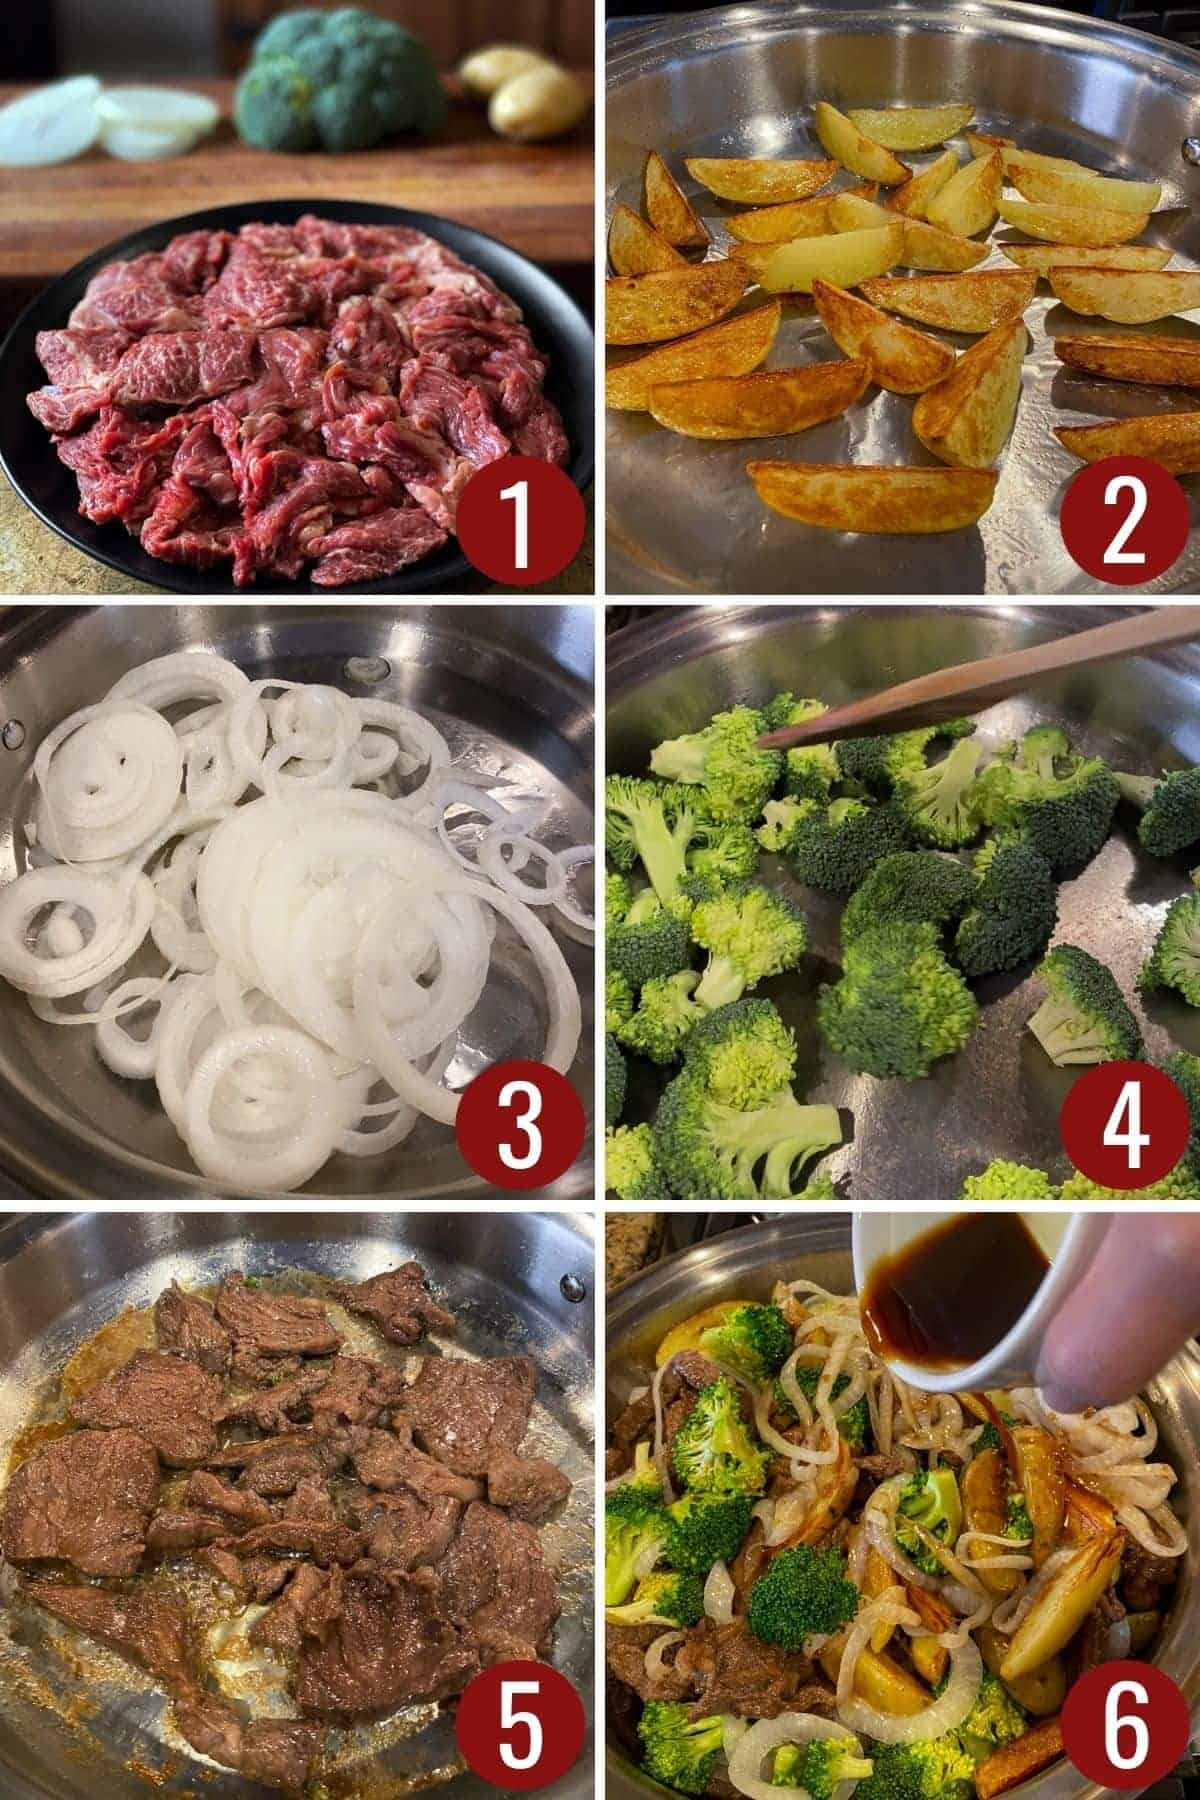 Steps to make beef and broccoli.